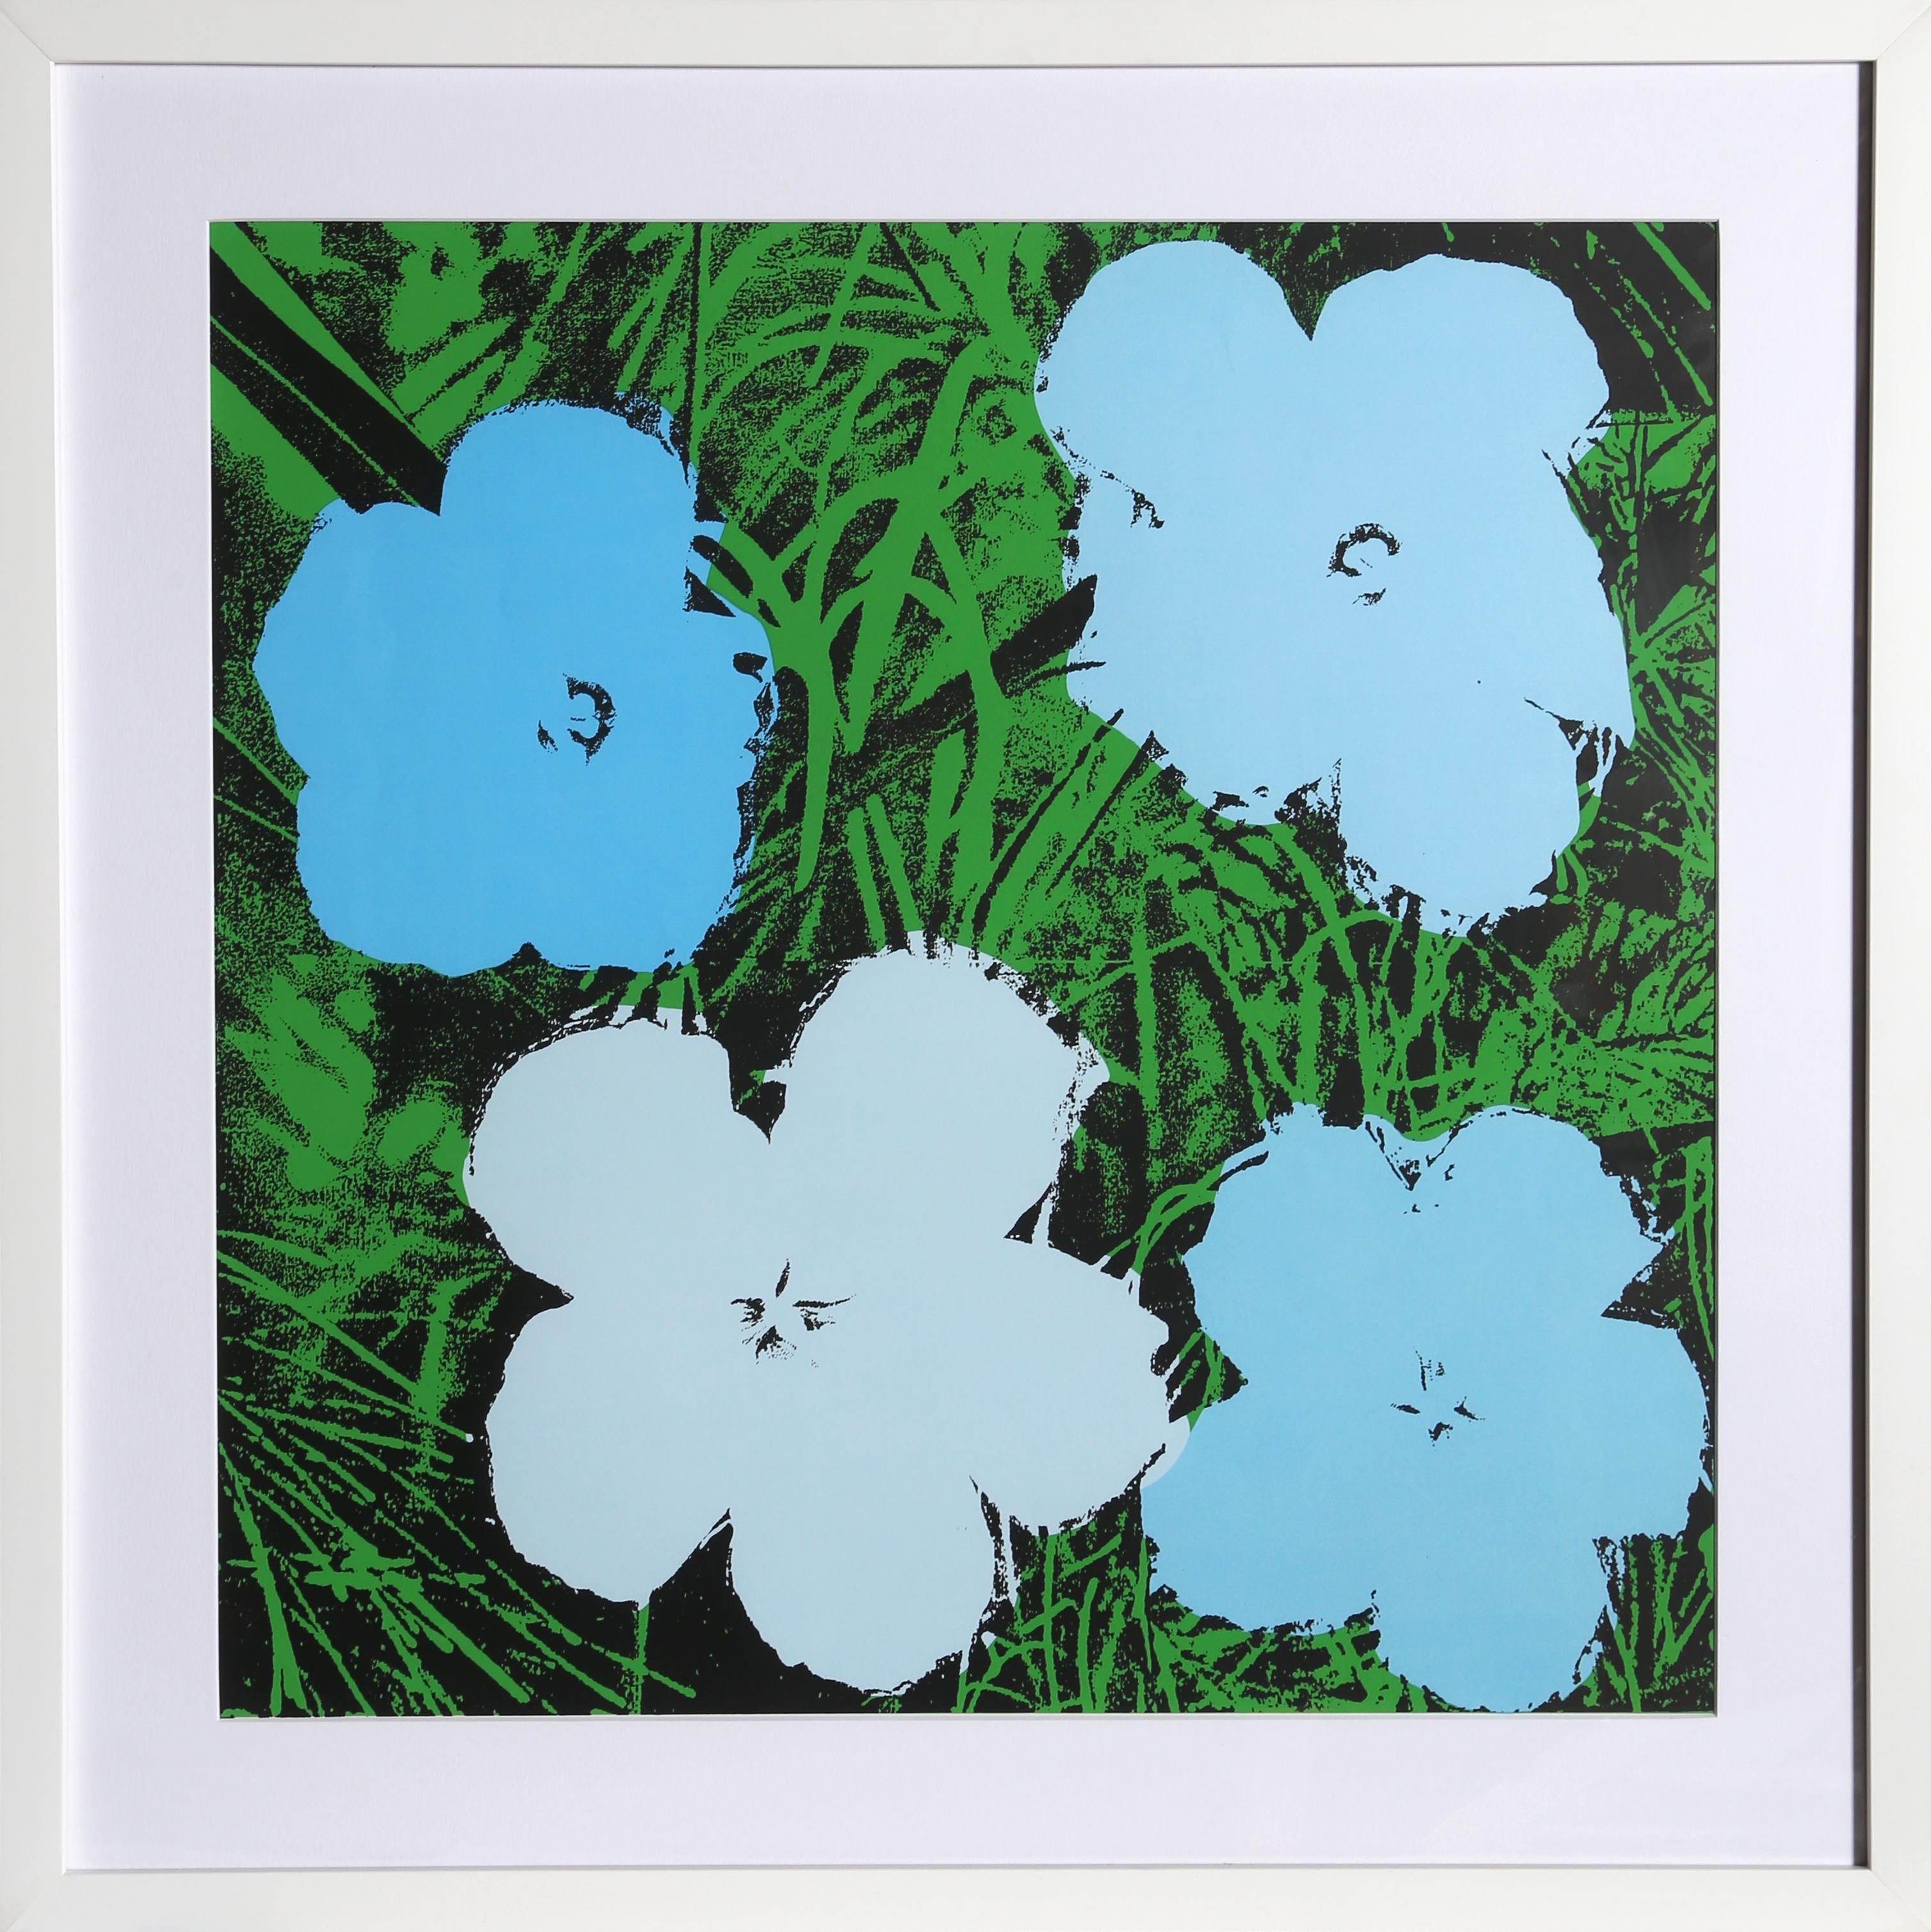 Ce poster sérigraphié d'Andy Warhol reprend le motif emblématique des quatre fleurs, qu'il utilisait régulièrement pour diverses impressions et peintures. Ces quatre fleurs apparaissent sur un fond vert et sont toutes de différentes nuances de bleu